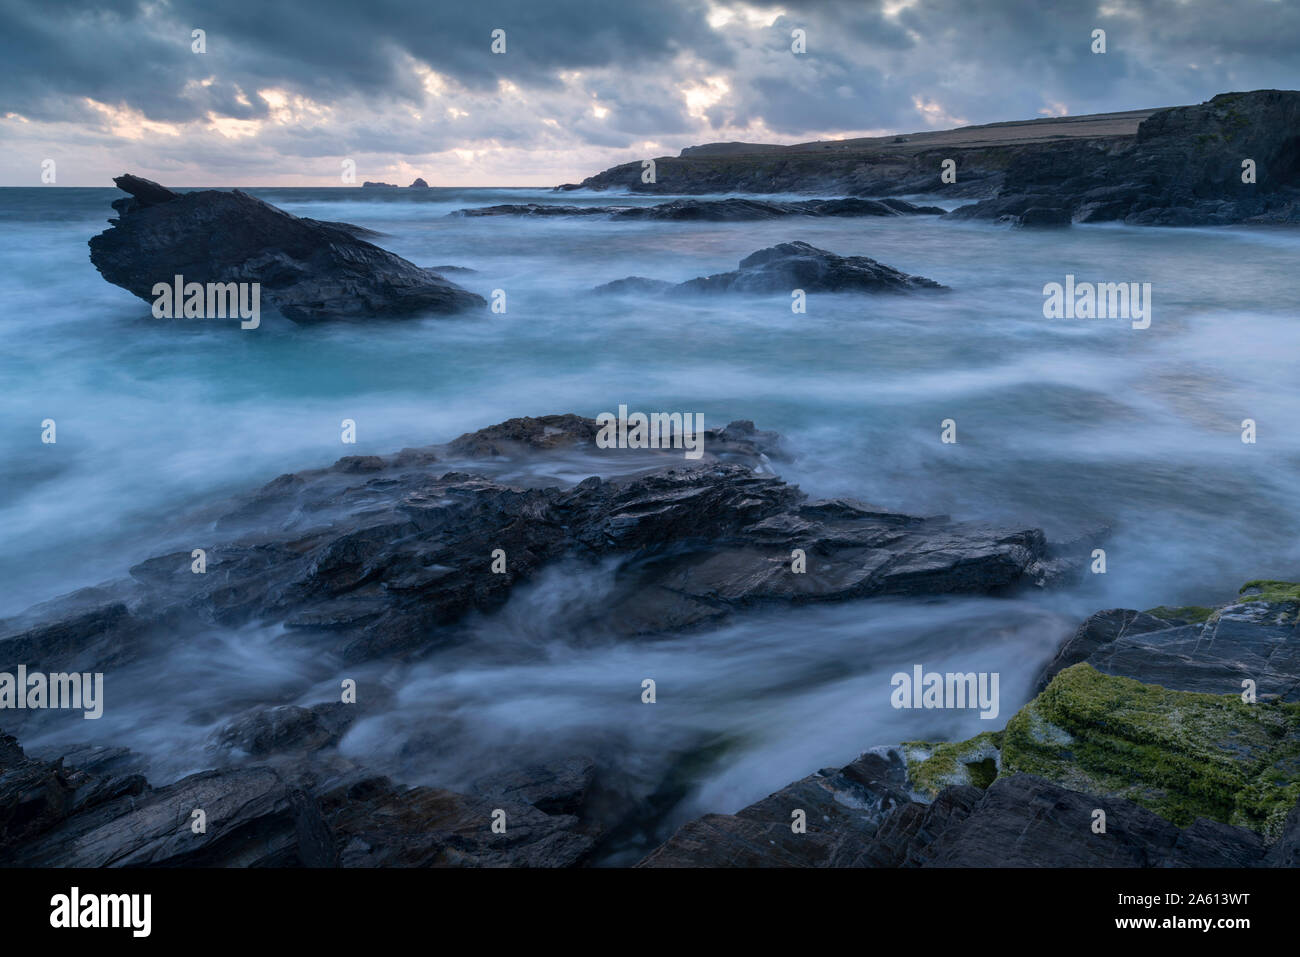 Soirée orageuse à Boobys Bay sur la côte nord des Cornouailles, Angleterre, Royaume-Uni, Europe Banque D'Images